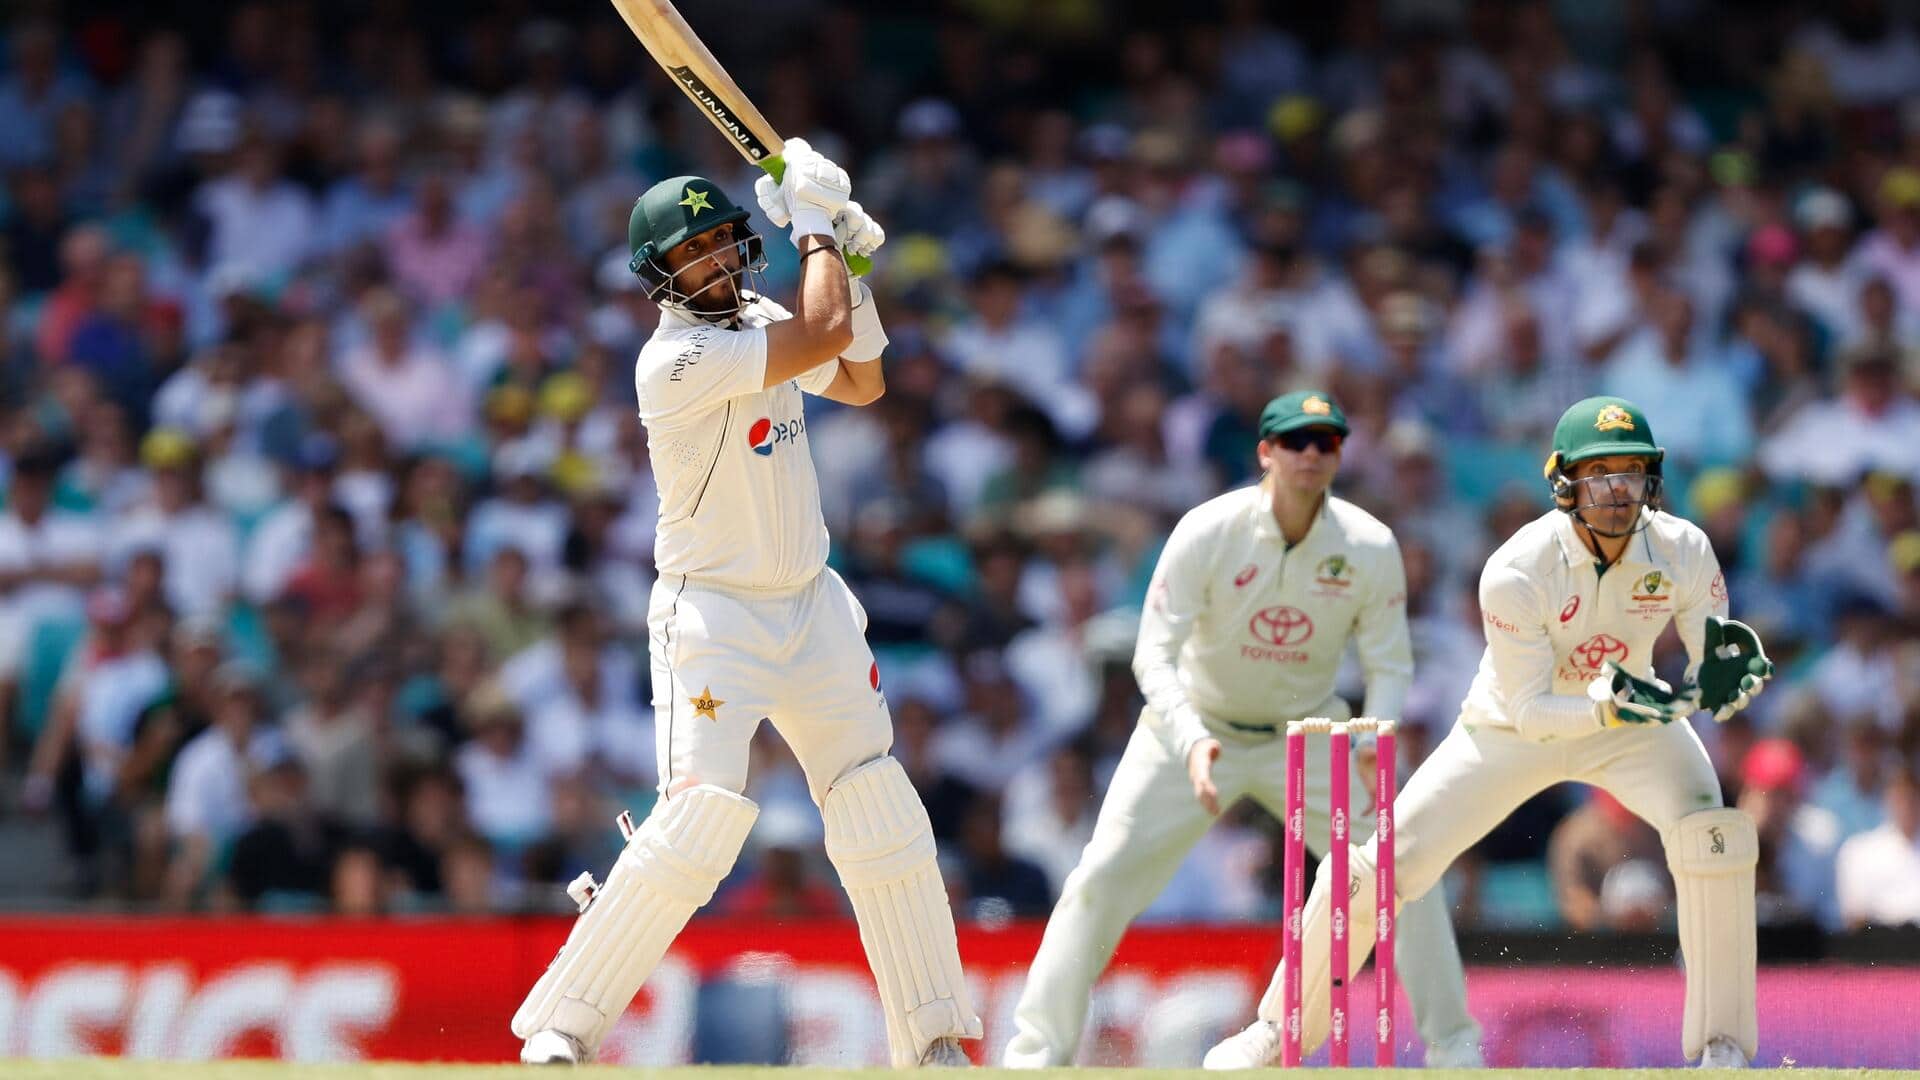 Pakistan's Agha Salman slams his second successive fifty against Australia 